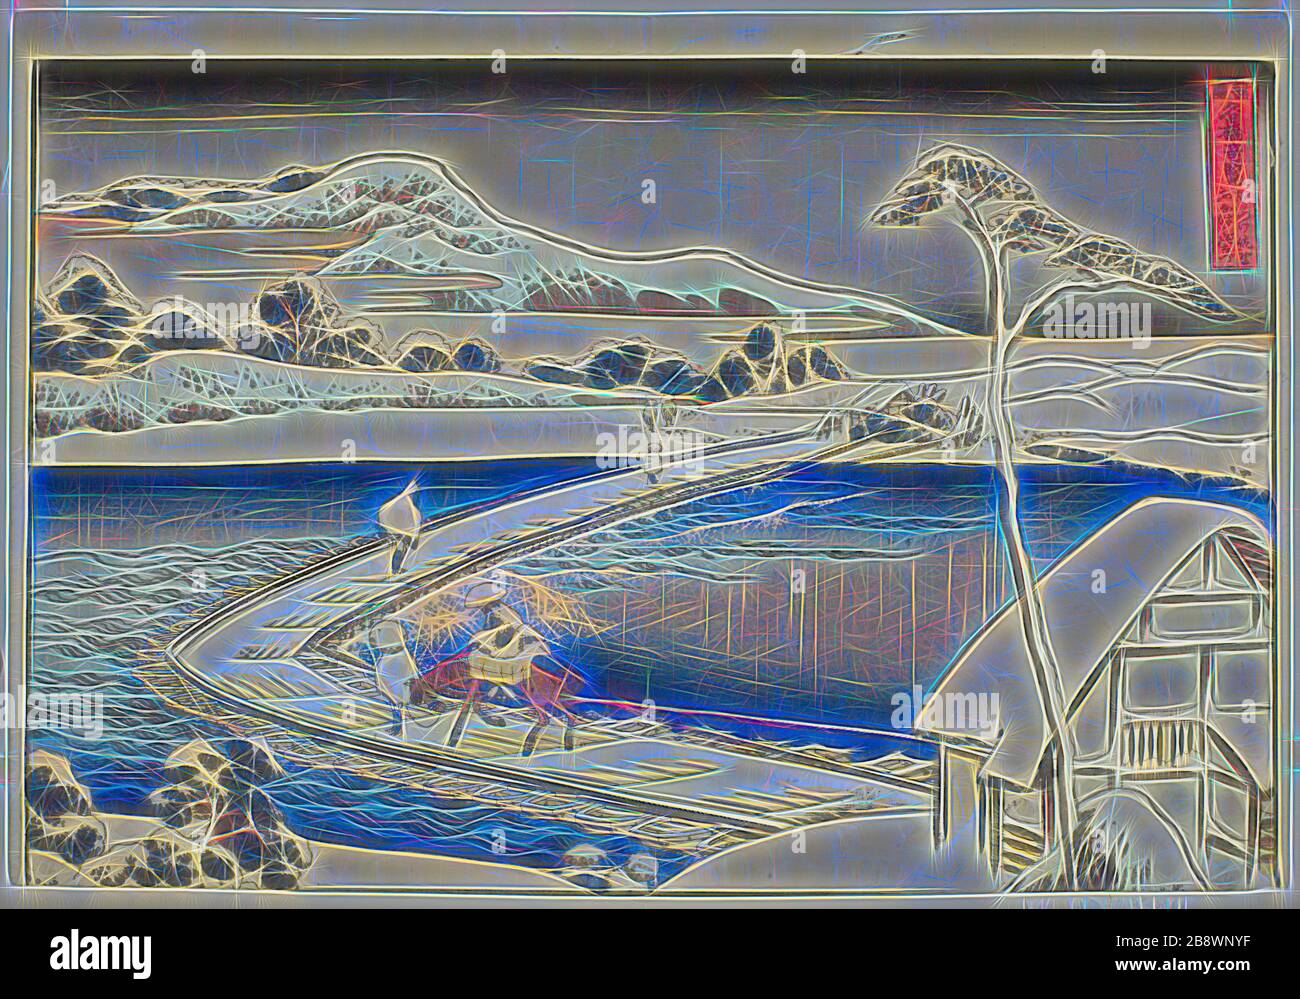 Antica veduta del Pontoon Bridge a Sano nella provincia di Kozuke (Kozuke sano funabashi no kozu), dalla serie inusuali vedute dei famosi ponti in varie Province (Shokoku meikyo kiran), c. 1833/34, Katsushika Hokusai ?? ??, Giapponese, 1760-1849, Giappone, stampa a blocchi di legno a colori, oban, Reimagined by Gibon, disegno di un caldo e allegro bagliore di luminosità e di radianza di raggi di luce. Arte classica reinventata con un tocco moderno. La fotografia ispirata al futurismo, che abbraccia l'energia dinamica della tecnologia moderna, del movimento, della velocità e rivoluziona la cultura. Foto Stock